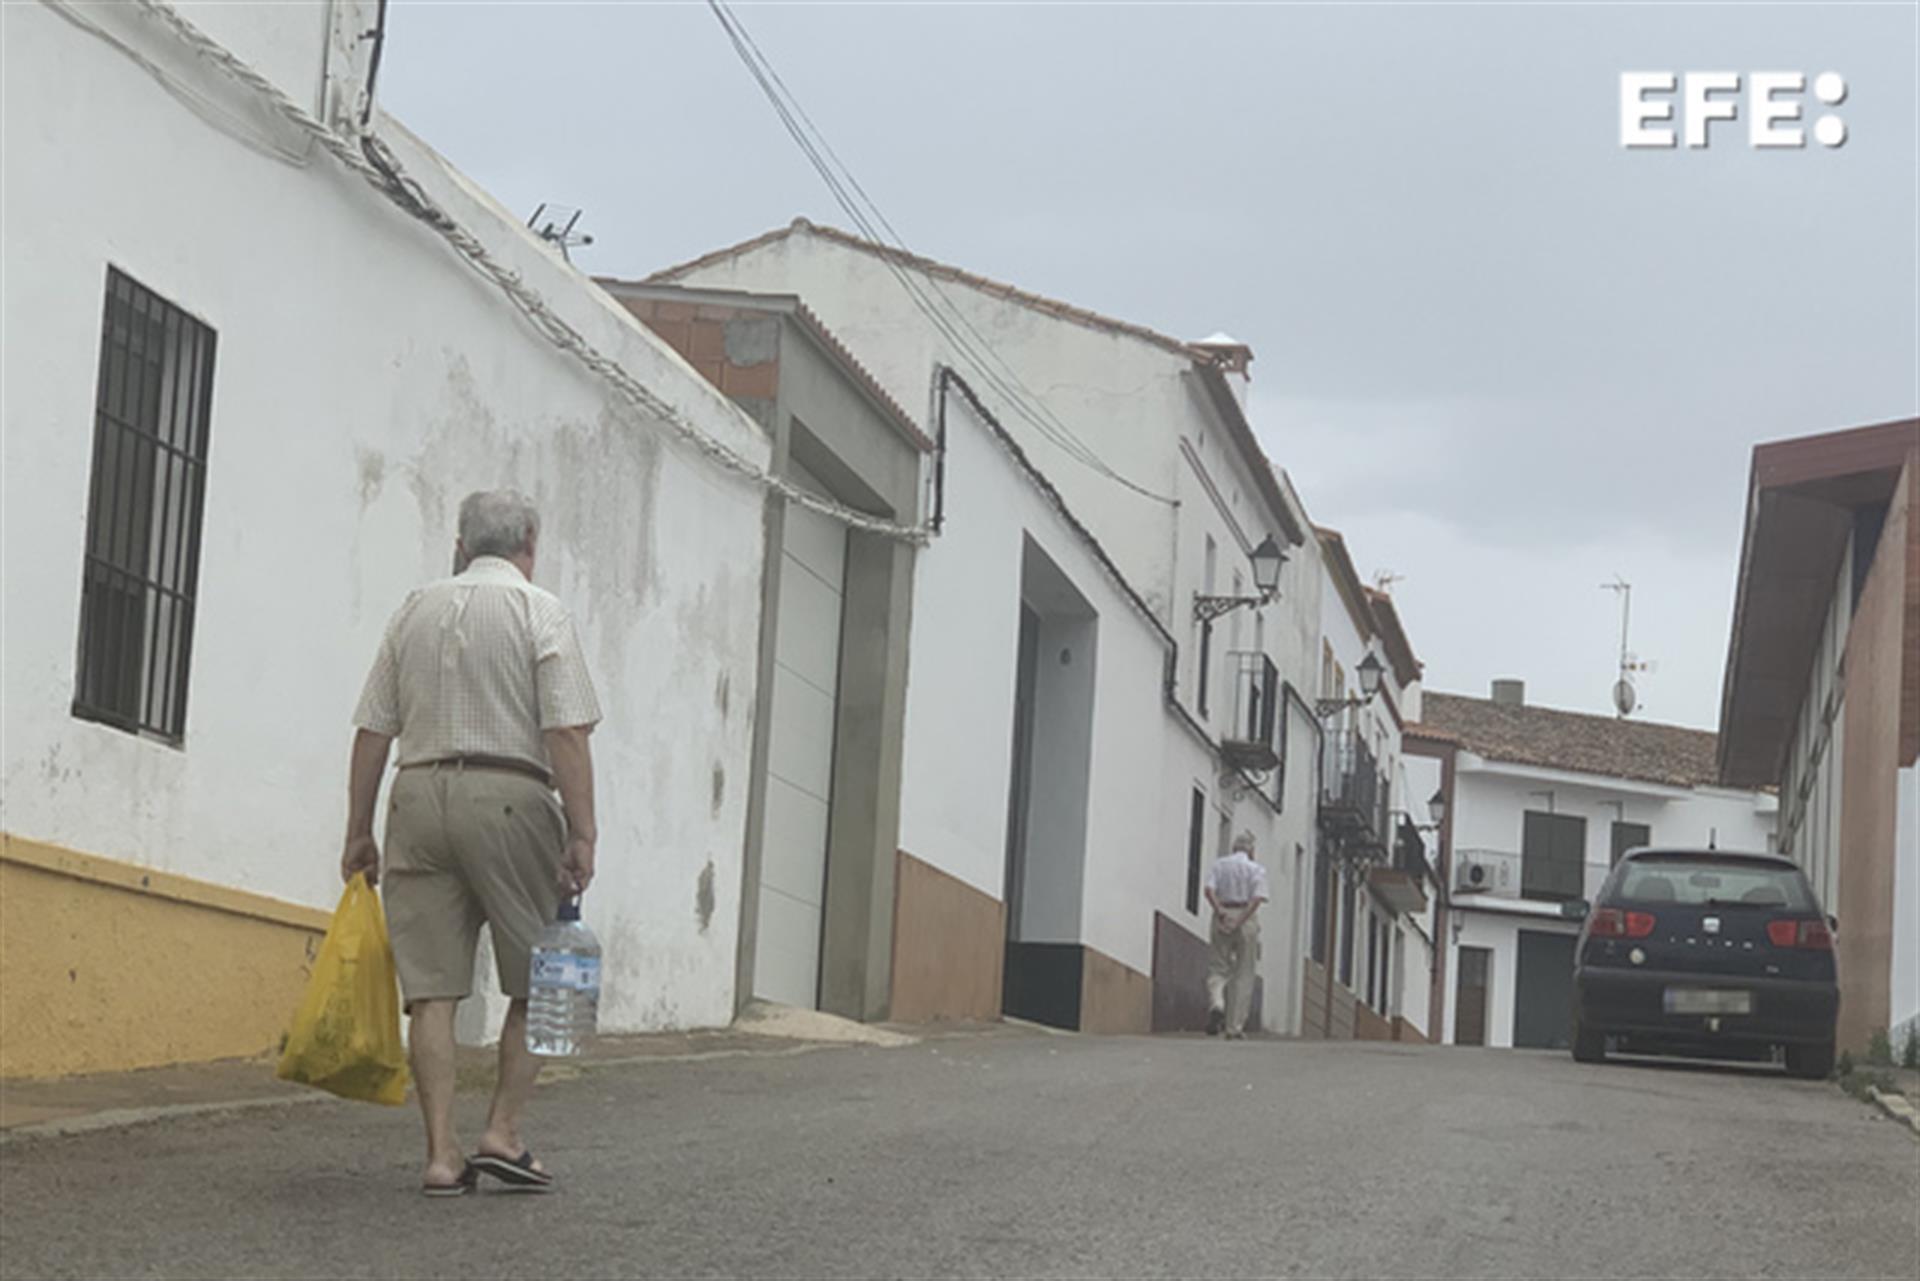 Un vecino de Cumbres Mayores (Huelva) transporta una botella de agua para consumir en su casa, en un municipio en el que las restricciones en el consumo de agua potable por el bajo nivel de sus acuíferos, hace que sus casi 1.800 vecinos no cuenten con agua corriente este fin de semana 22 horas seguidas. EFE/Fermín Cabanillas